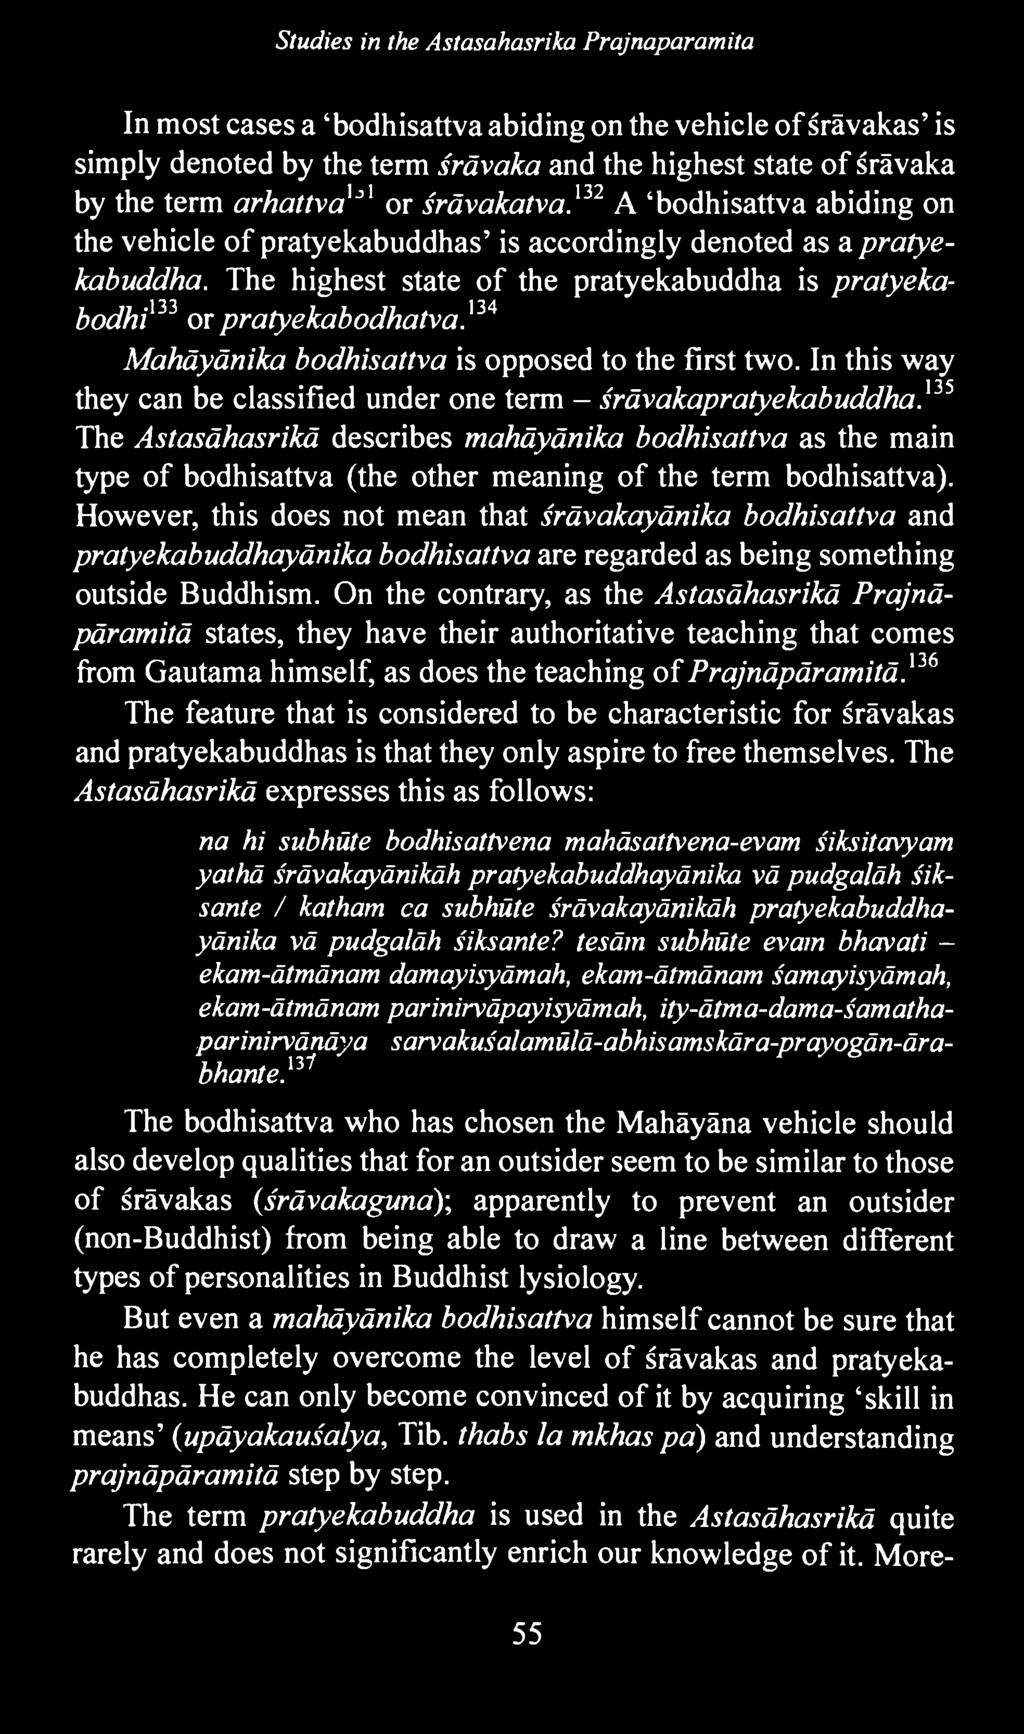 135 The Astasähasrikä describes mahäyänika bodhisattva as the main type of bodhisattva (the other meaning of the term bodhisattva).